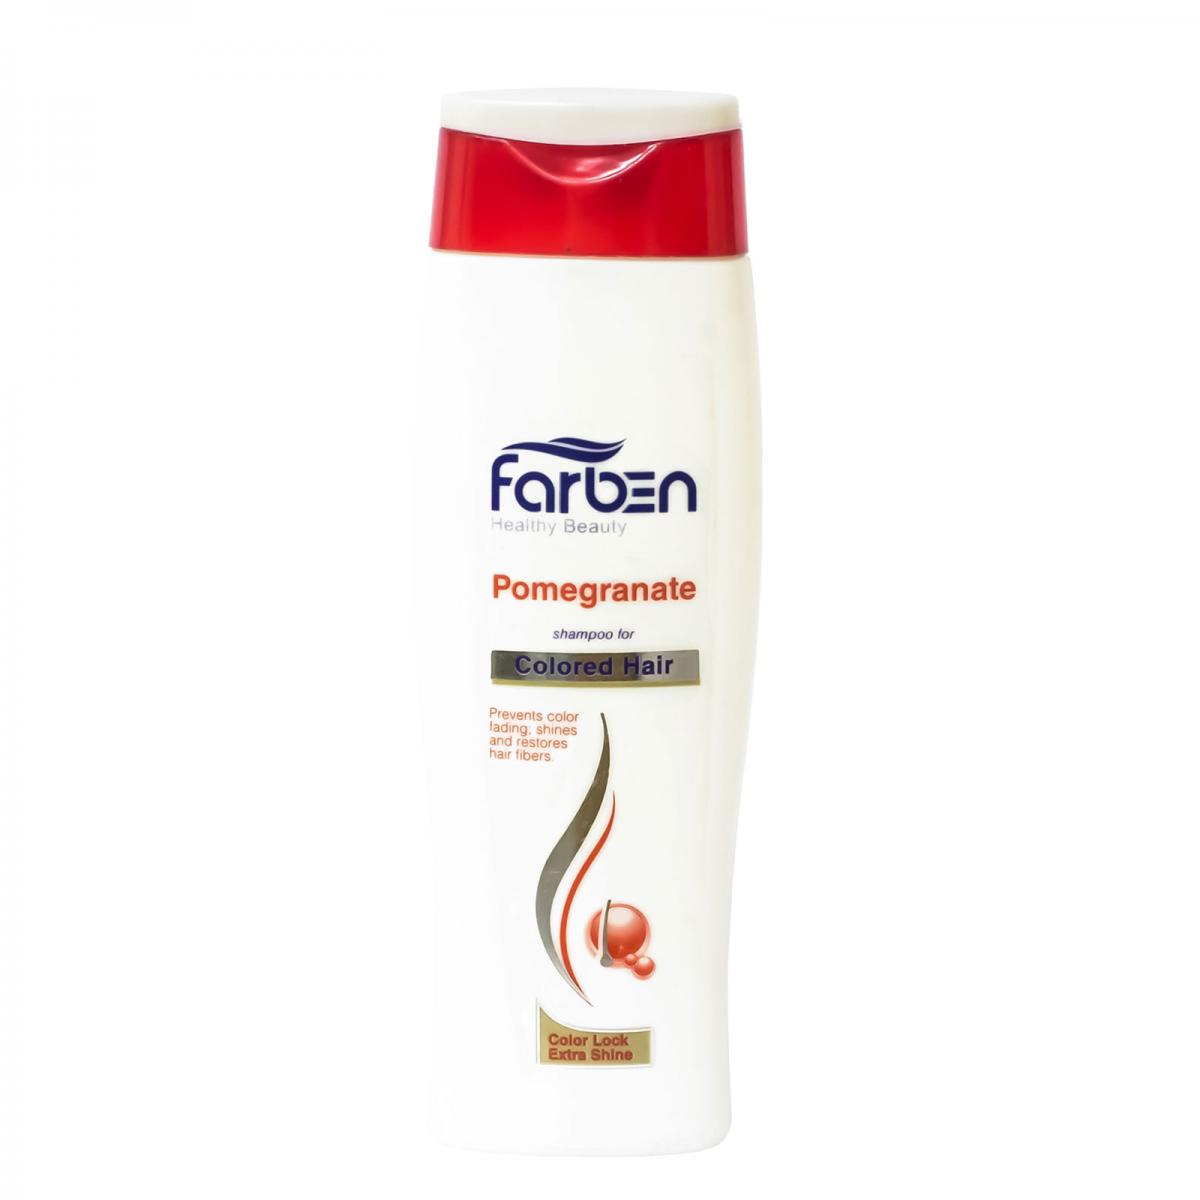 شامپو مناسب موهای رنگ شده - Farben Pomegrante Shampoo For Colored Hair 250ml